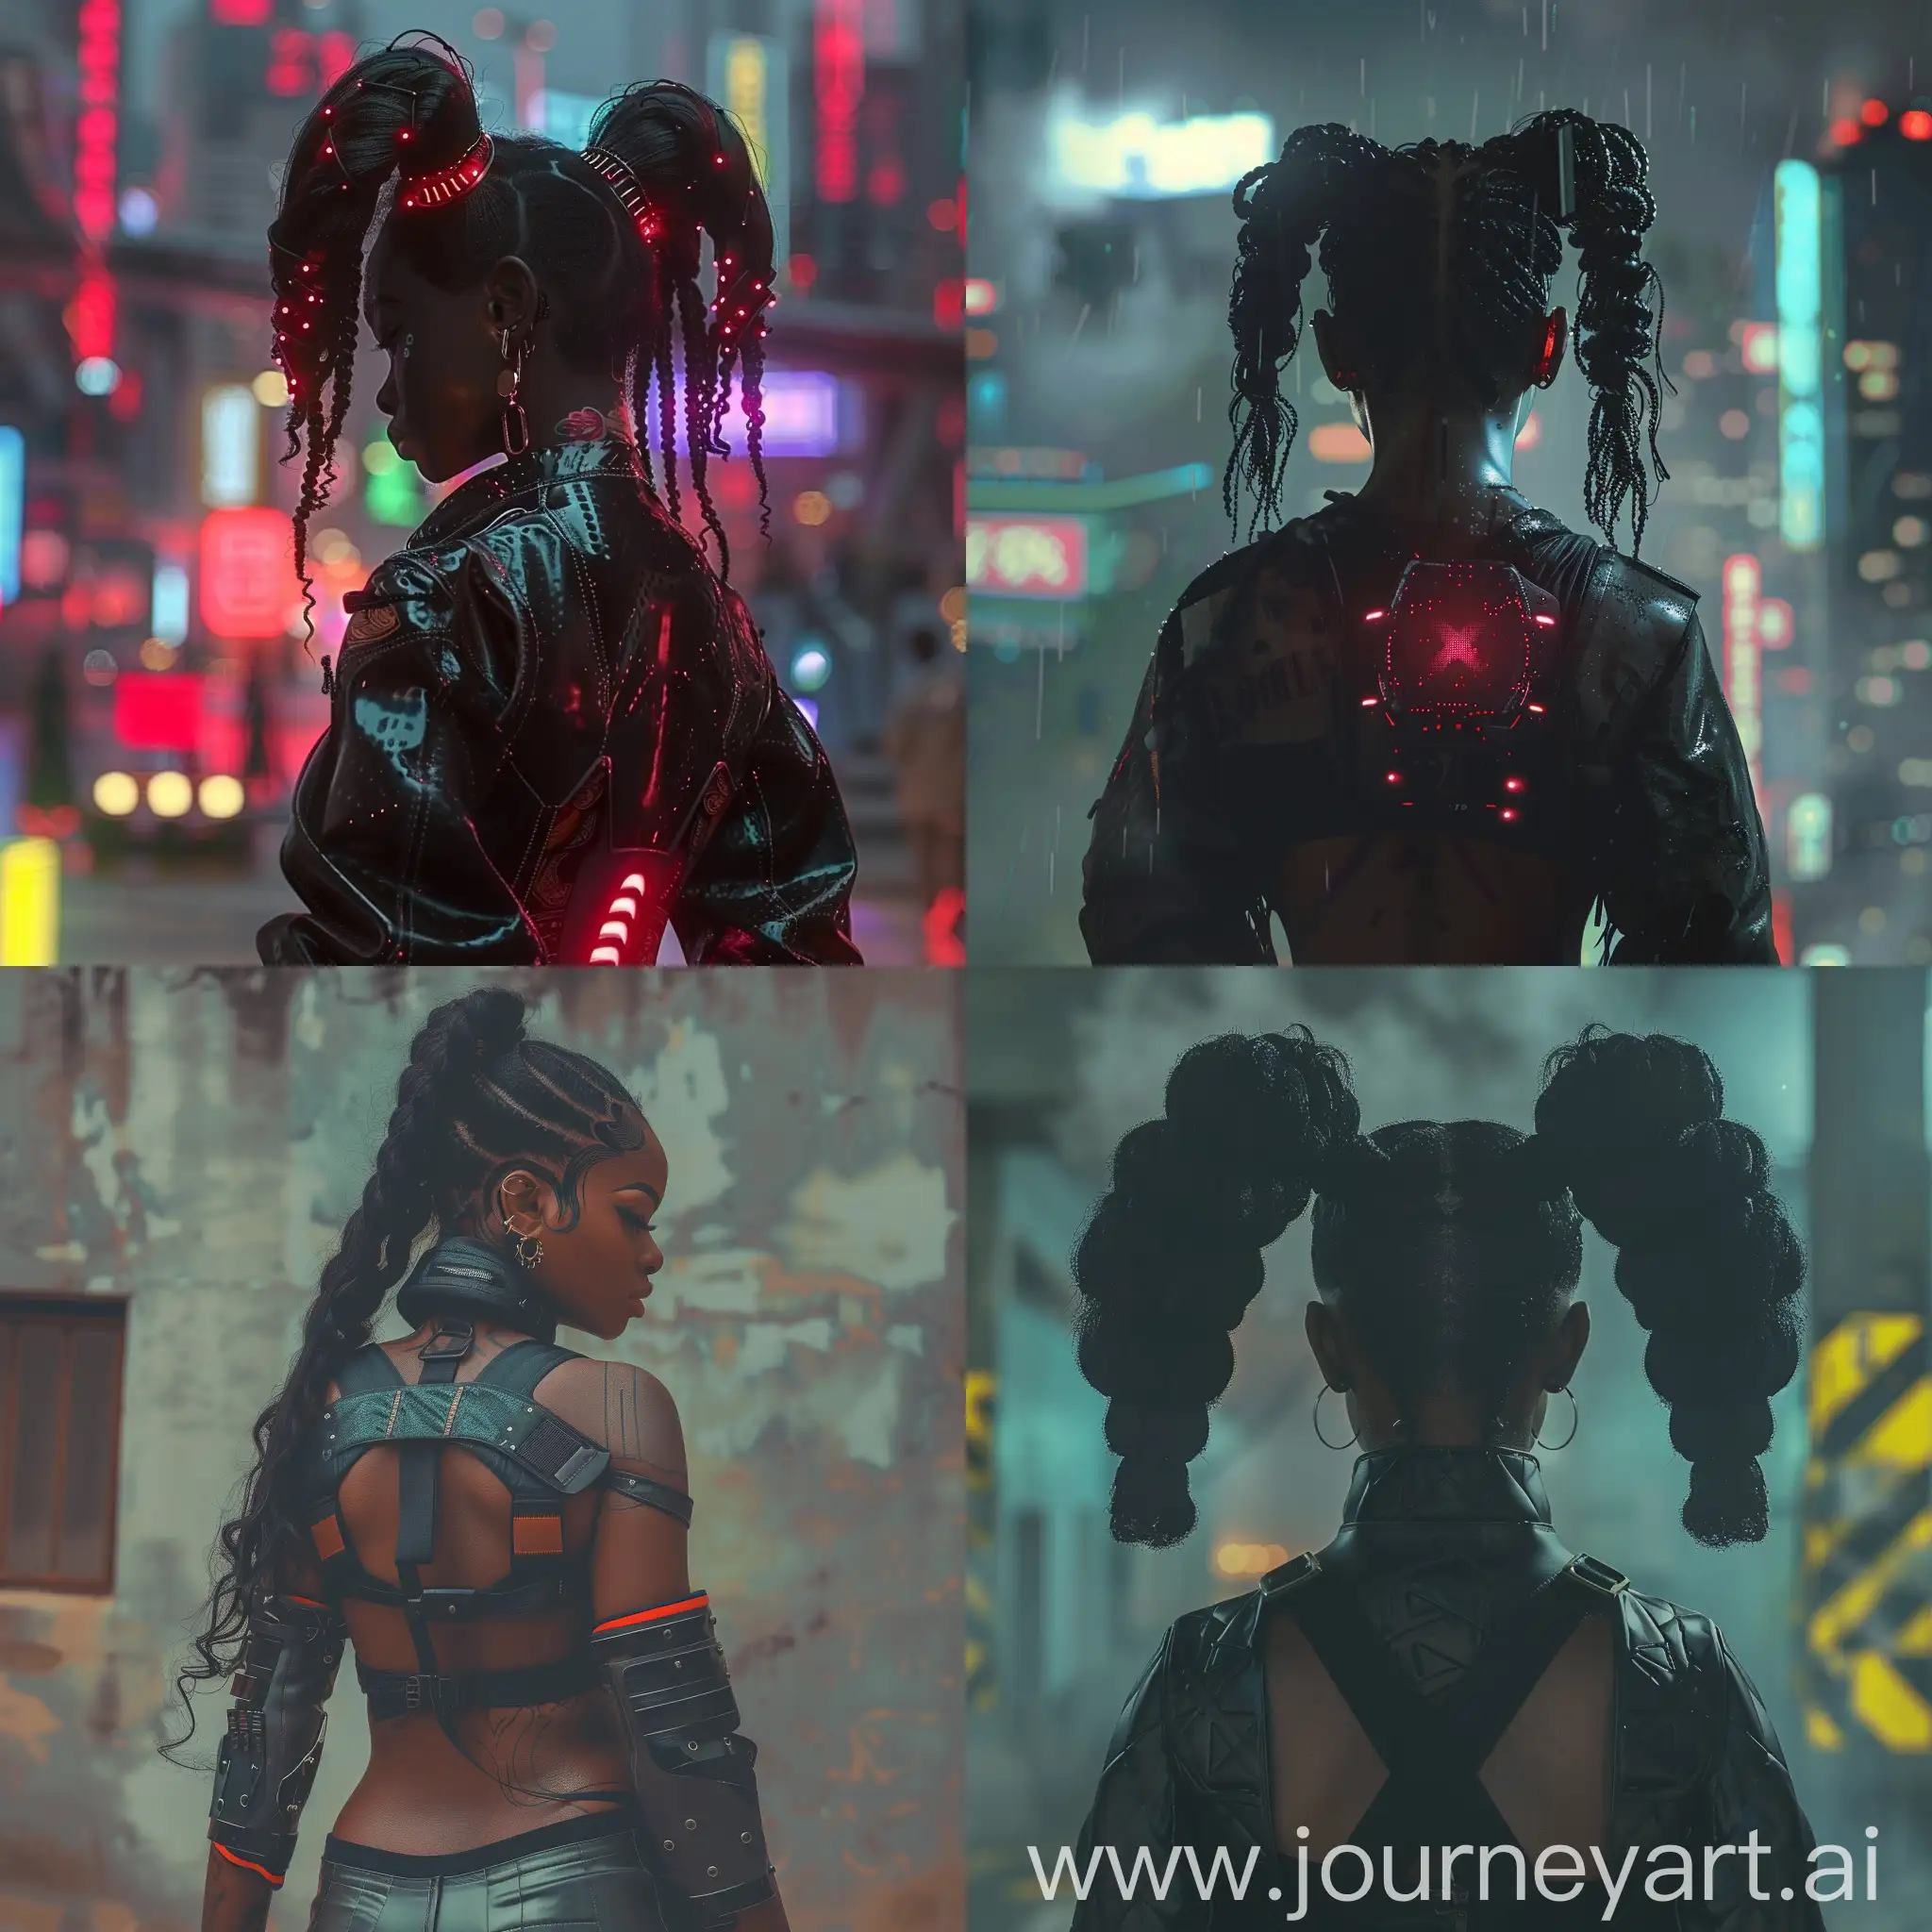 Futuristic-Cyberpunk-Women-in-Urban-Landscape